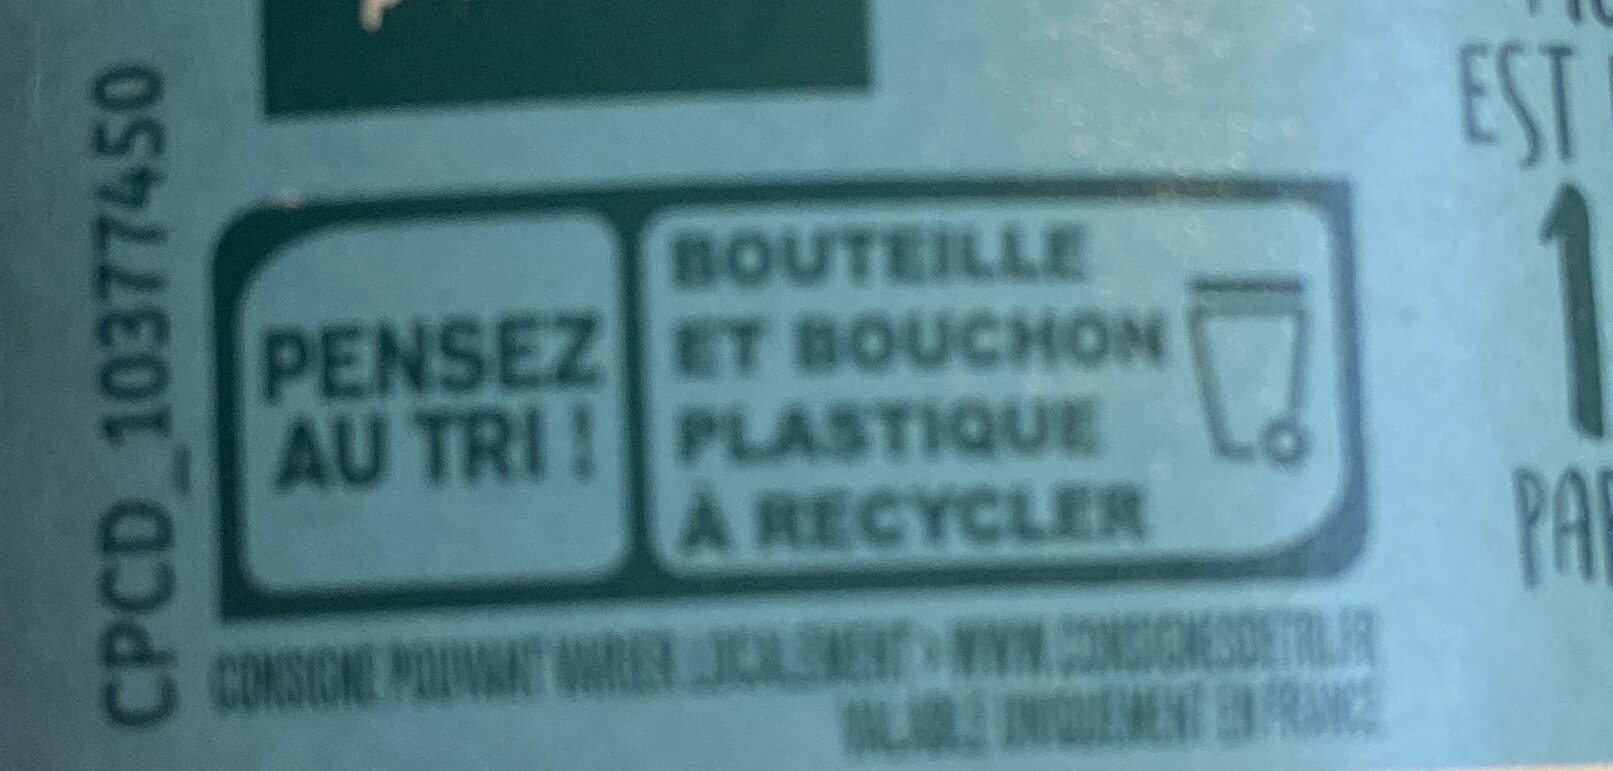 La salvetat - Instruction de recyclage et/ou informations d'emballage - fr